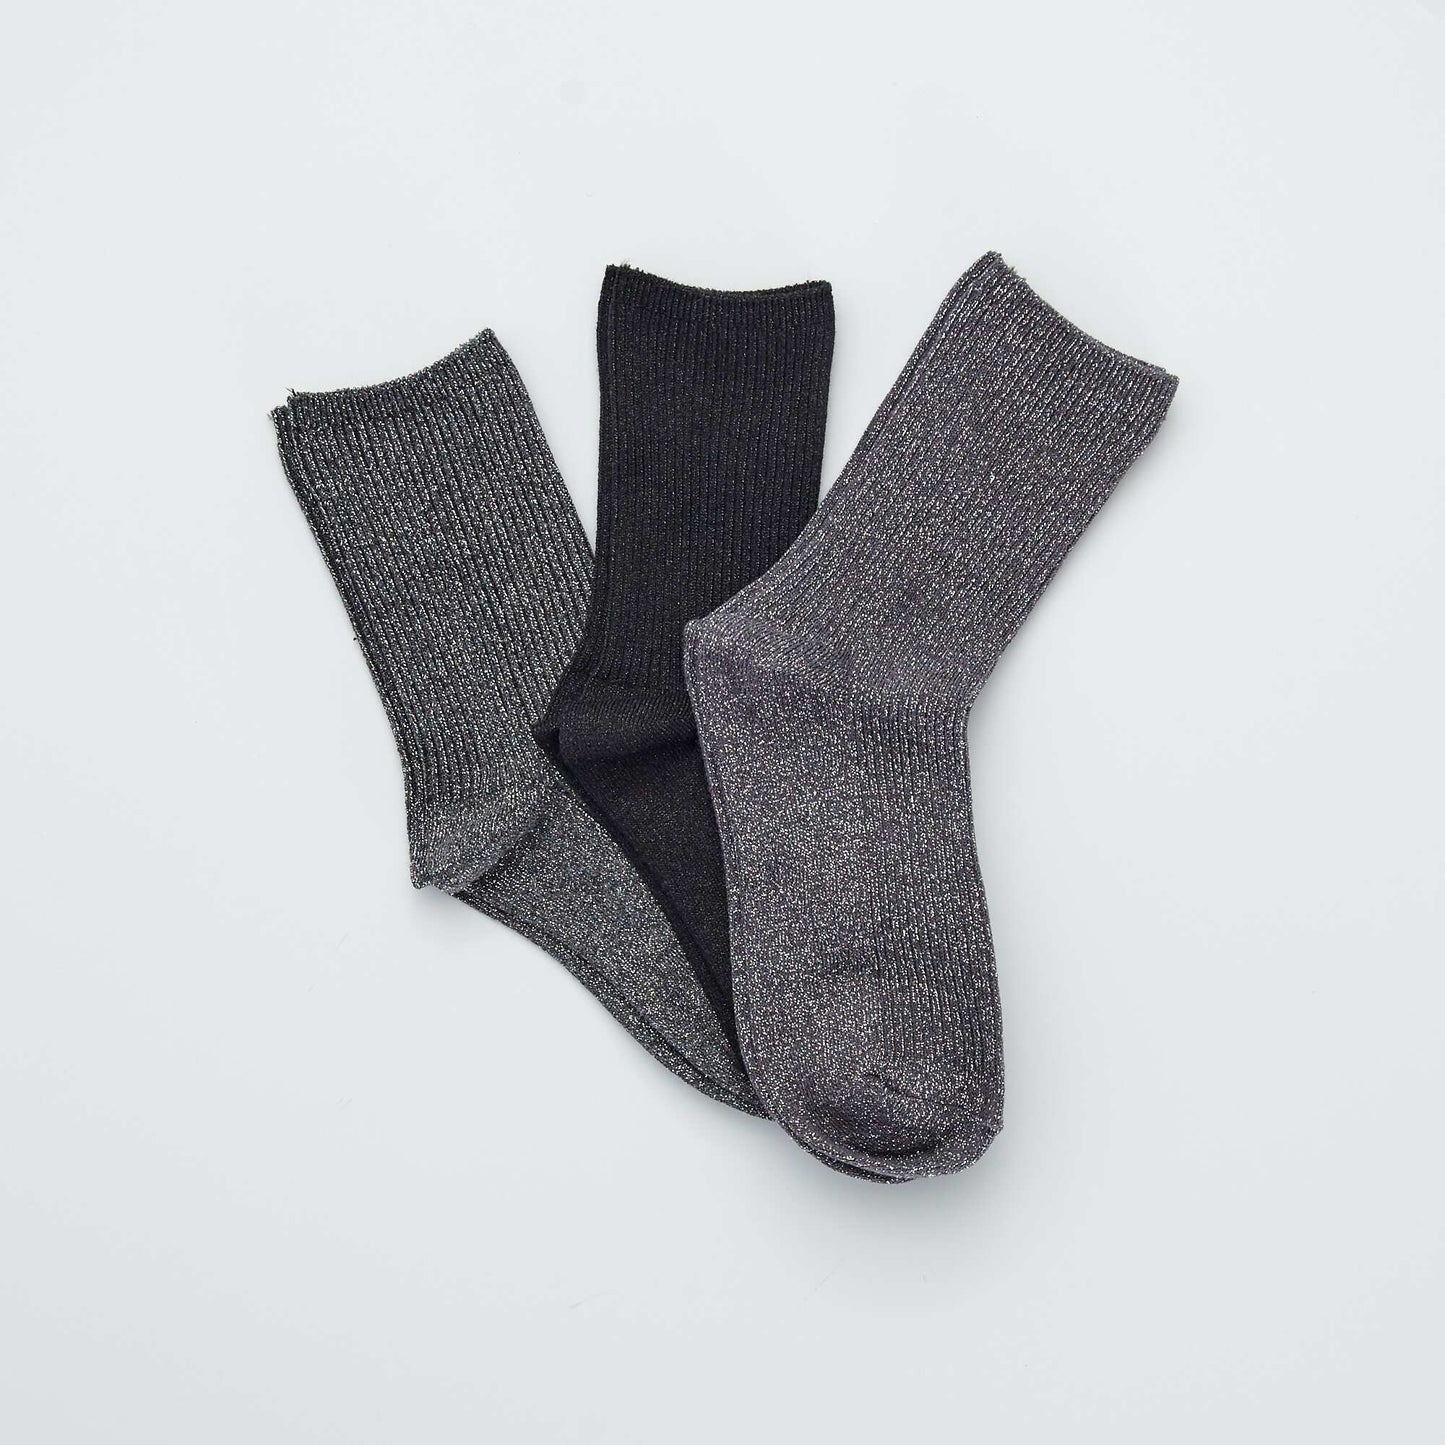 Pack of 3 pairs of socks black